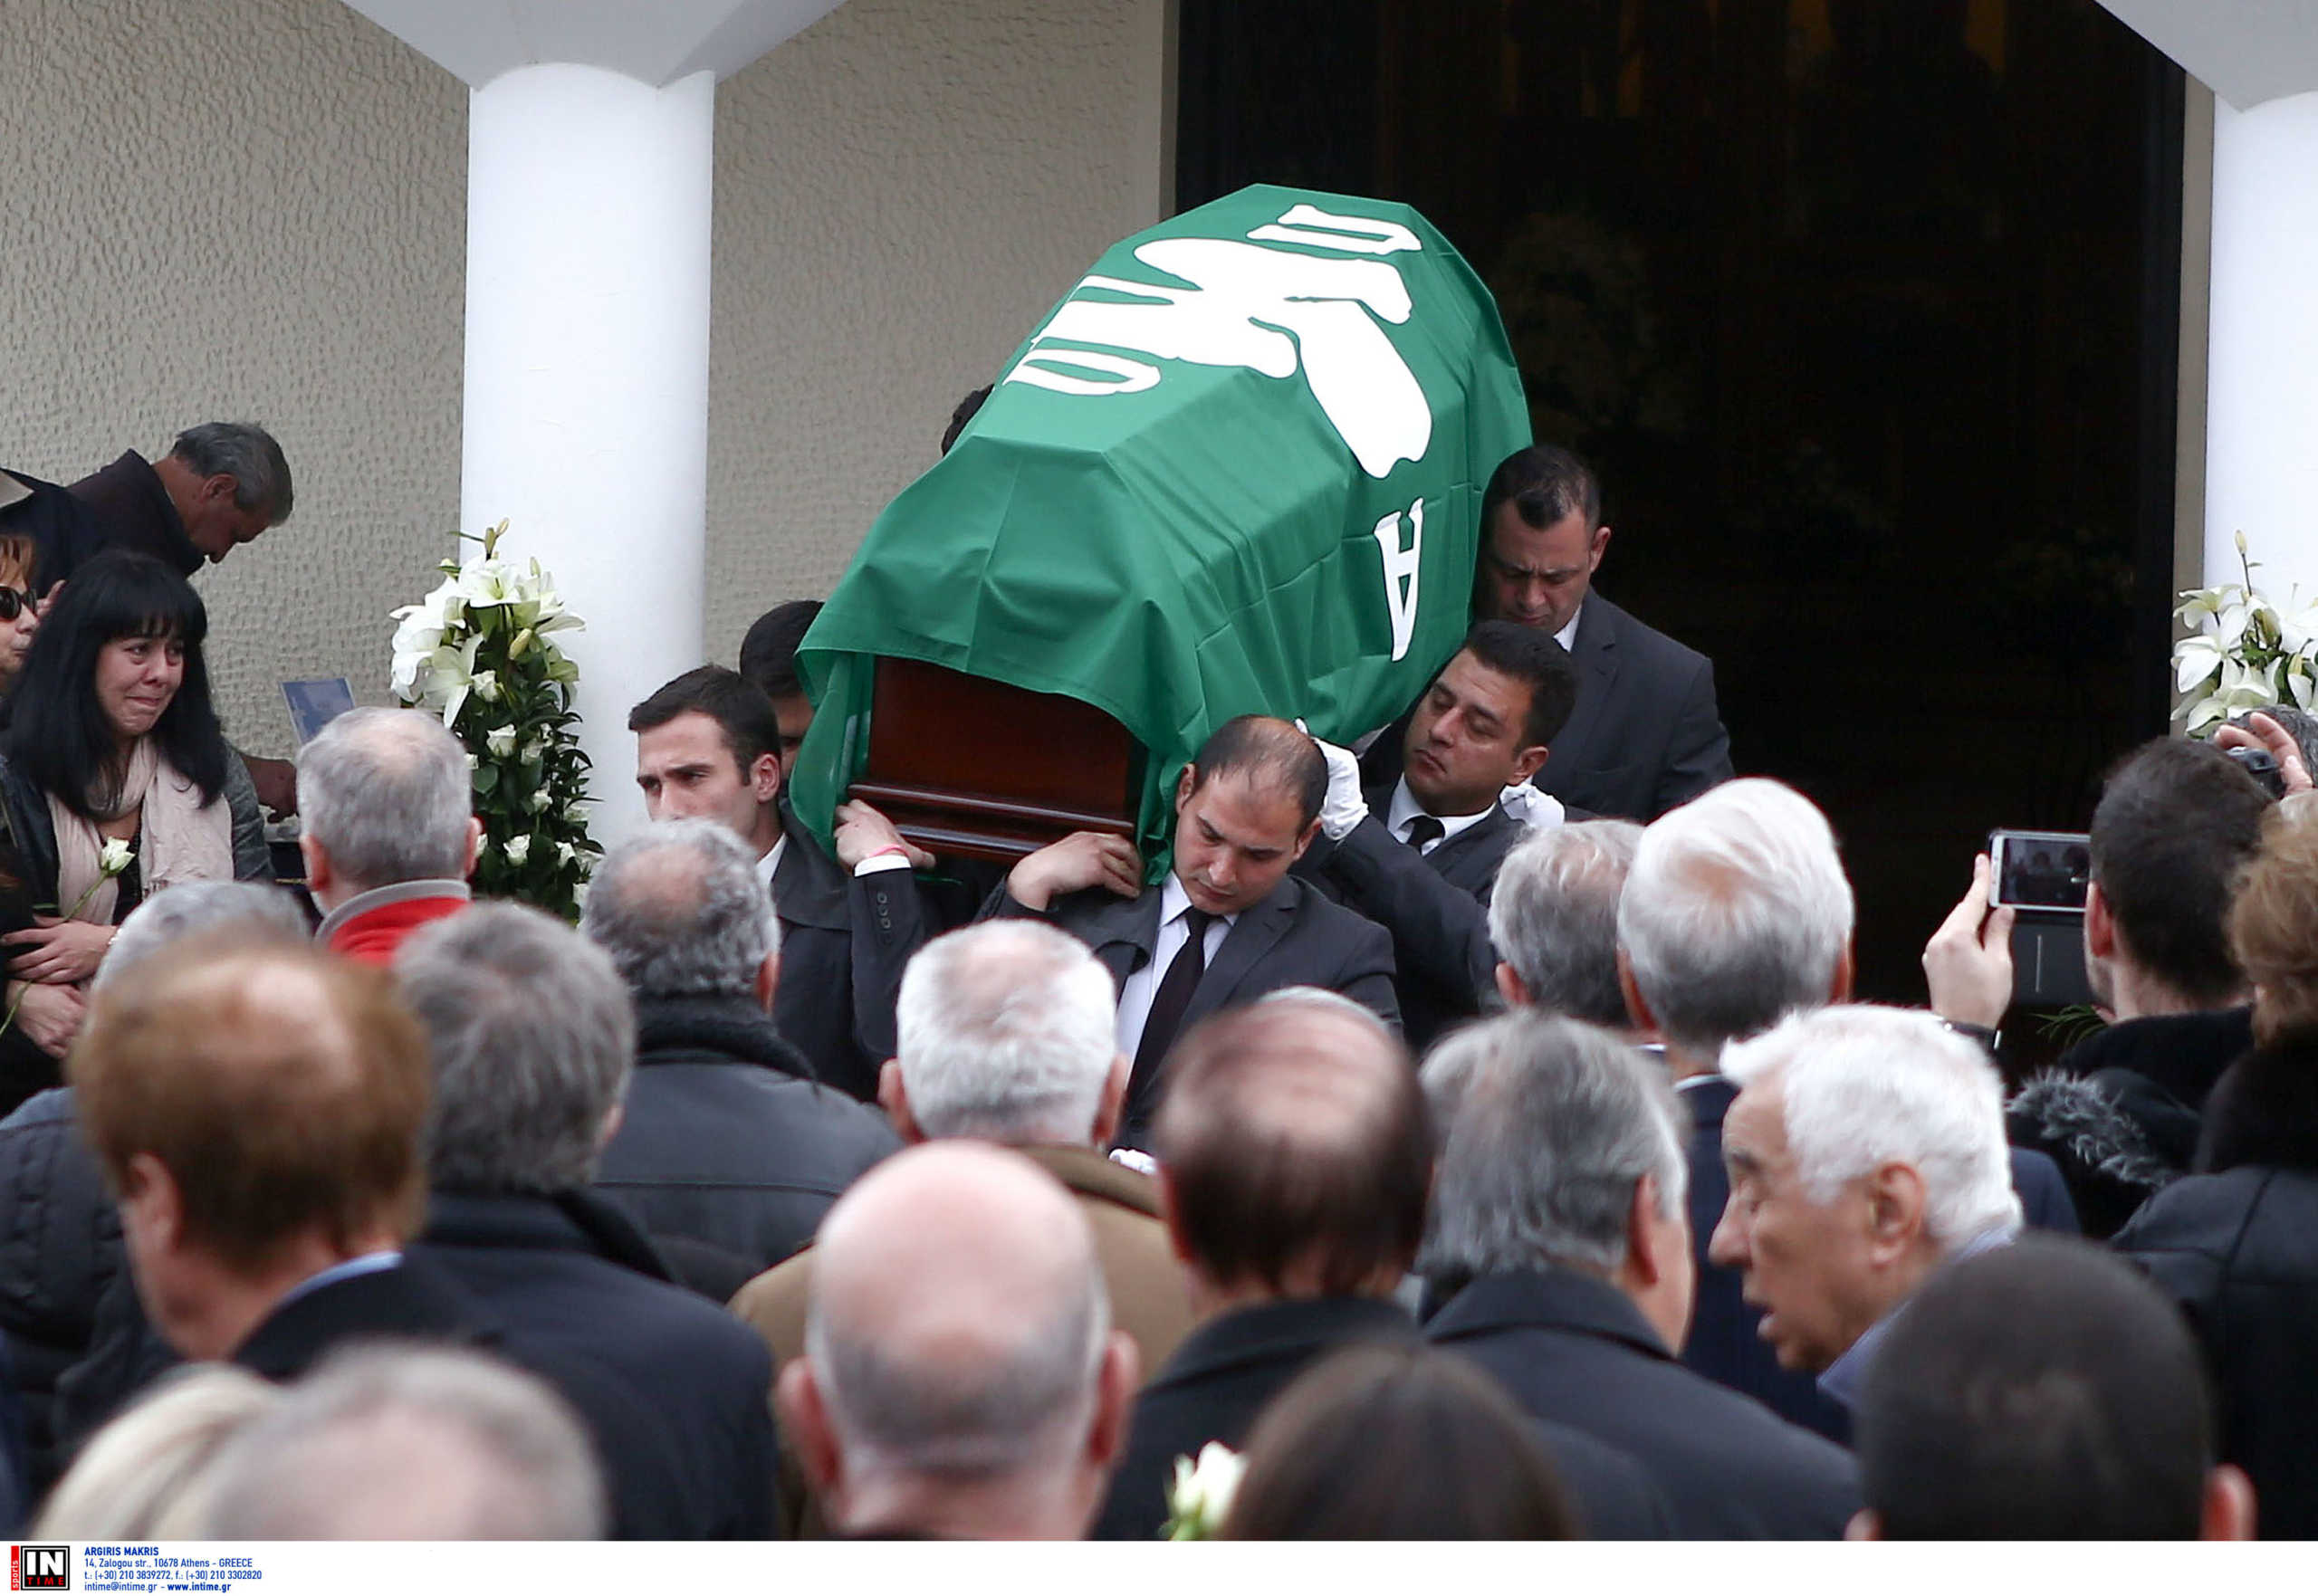 Κηδεία Παπαεμμανουήλ: “Καλό ταξίδι Αντρίκο”! Τελευταίο “αντίο” για τον θρυλικό “Κούνελο” (pics)